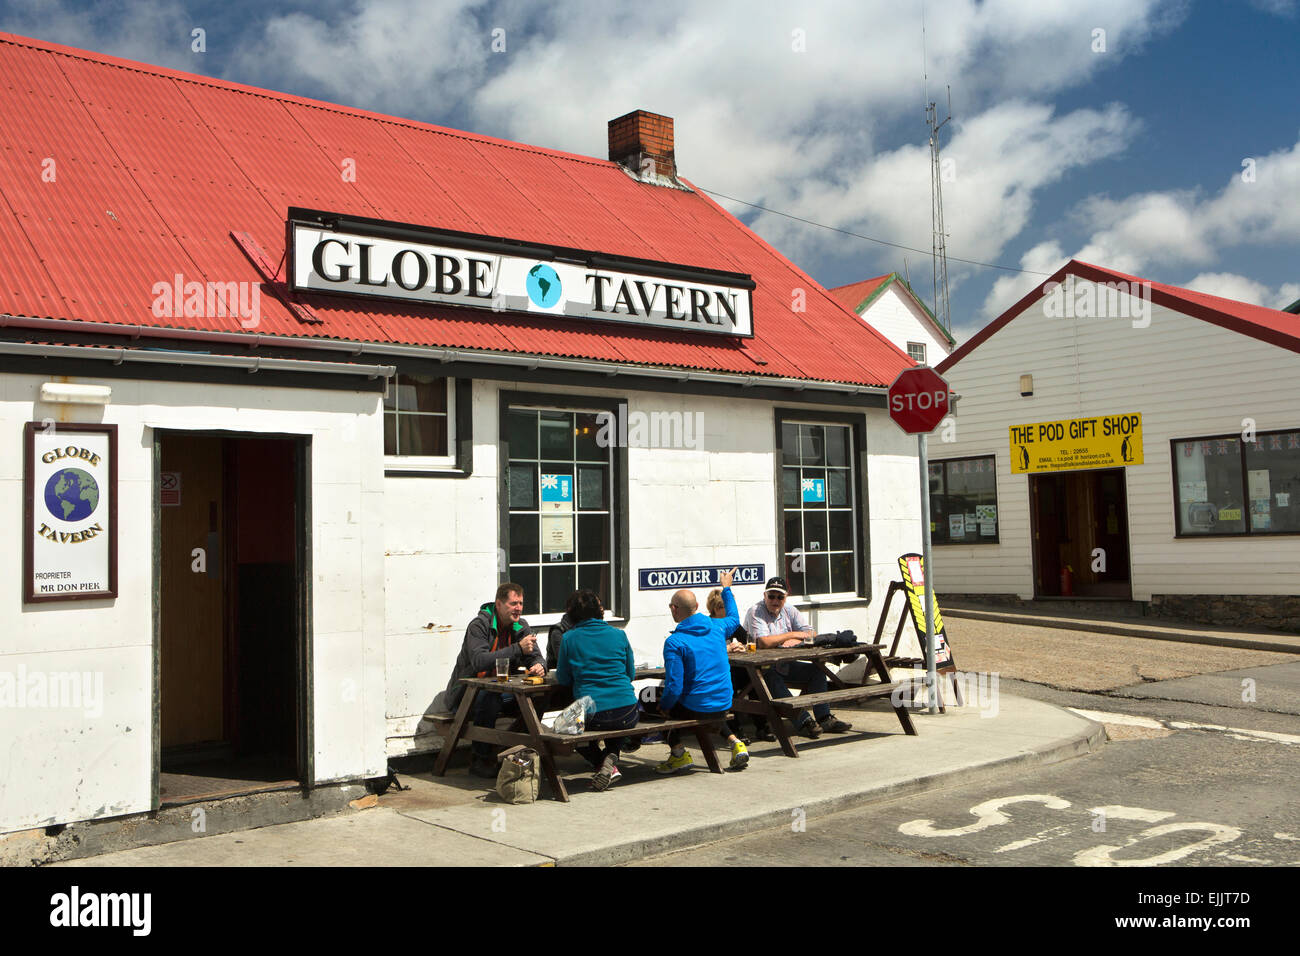 L'Atlantique Sud, Falklands, Port Stanley, les visiteurs assis dehors le Globe Tavern Pub dans sunshine Banque D'Images